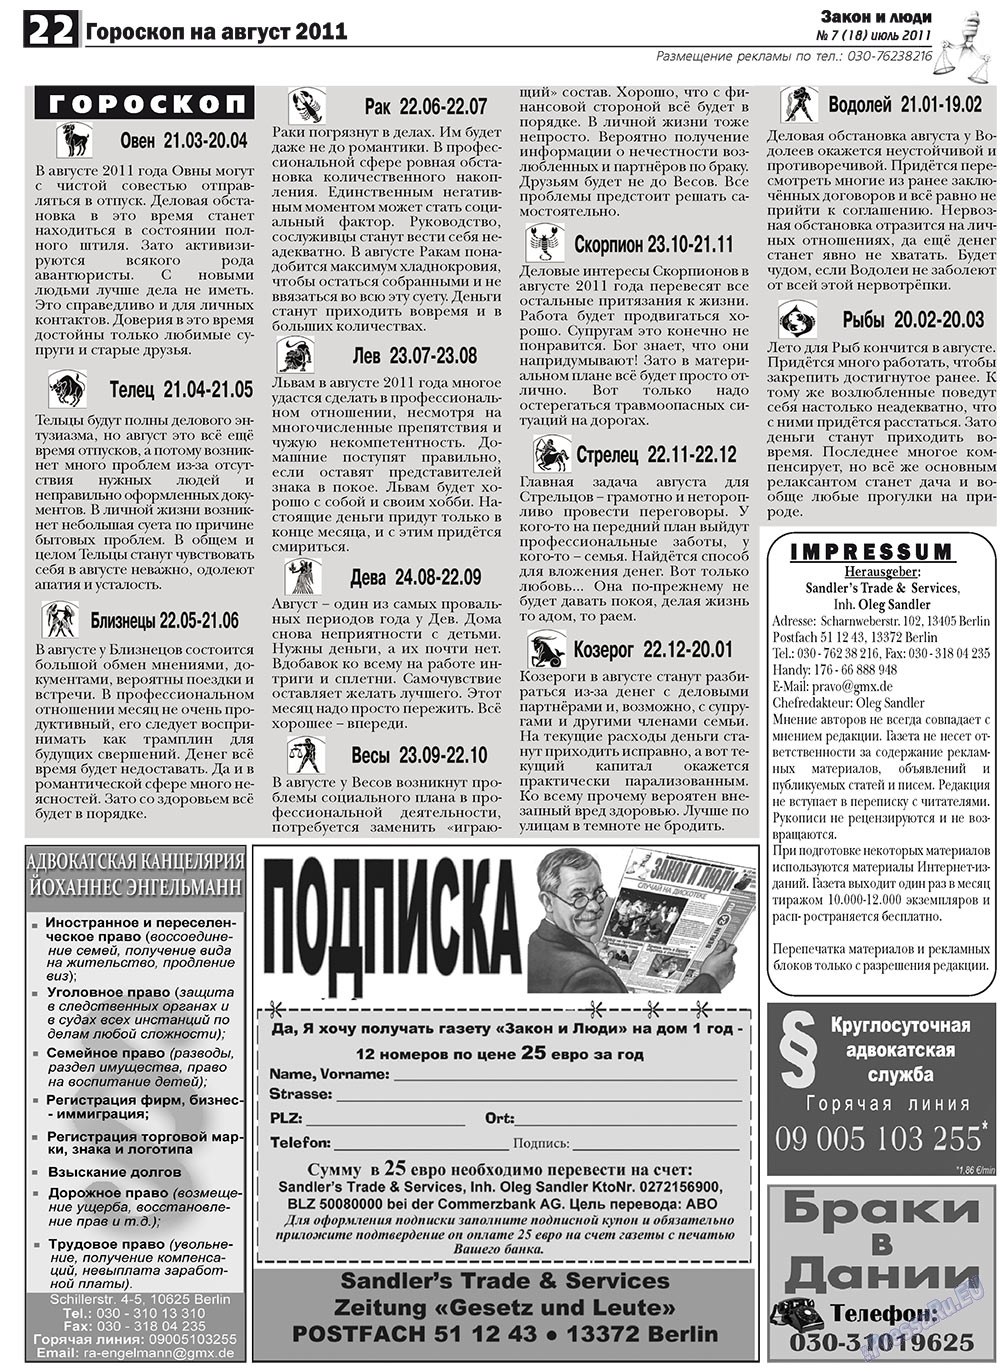 Закон и люди, газета. 2011 №7 стр.22